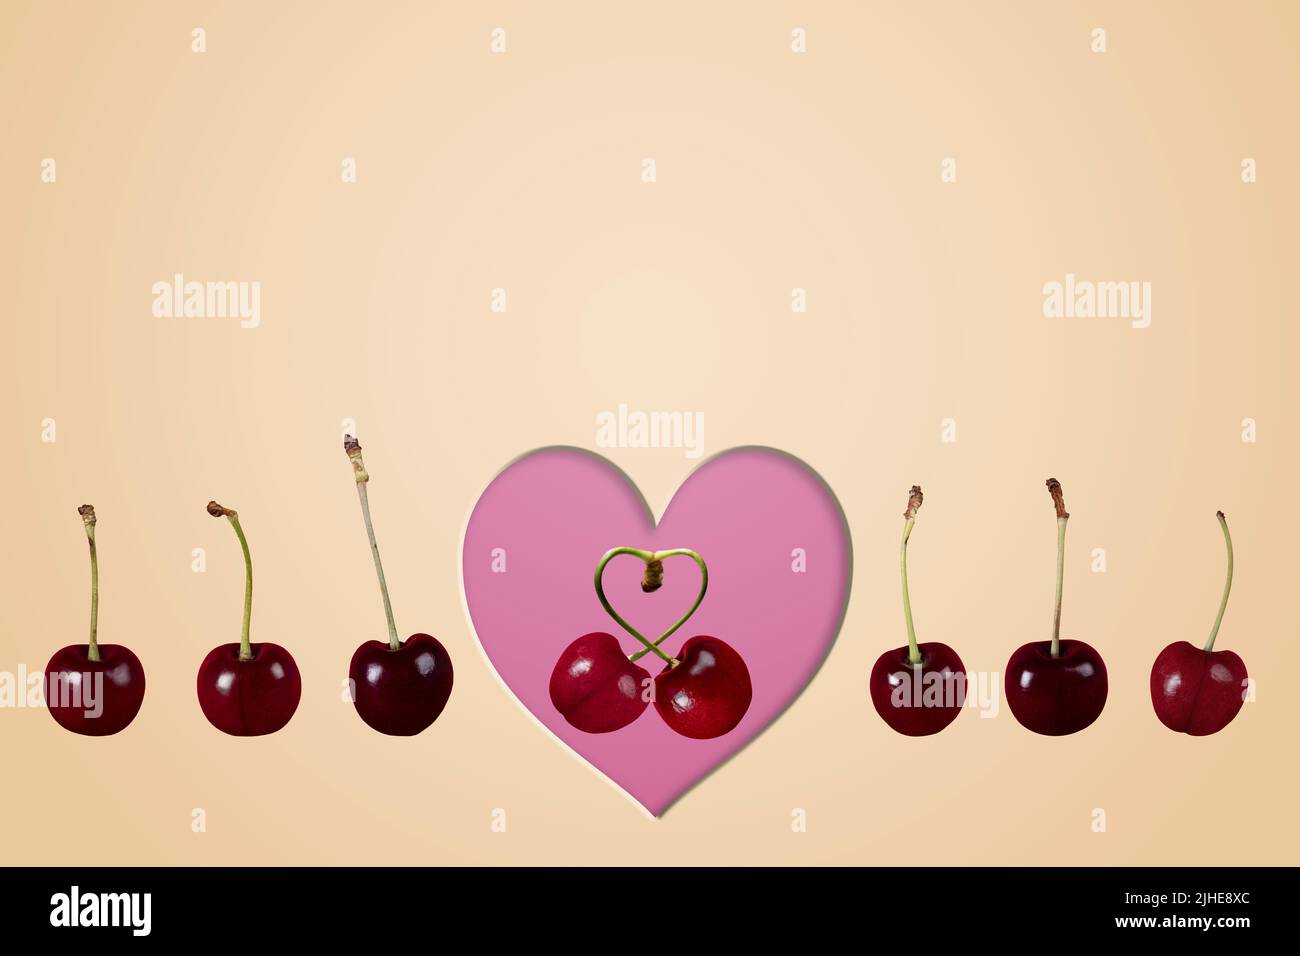 un couple unique aime les cerises fruit image concept avec ligne de rangs de cerises et coeur sur un fond beige coloré crème Banque D'Images